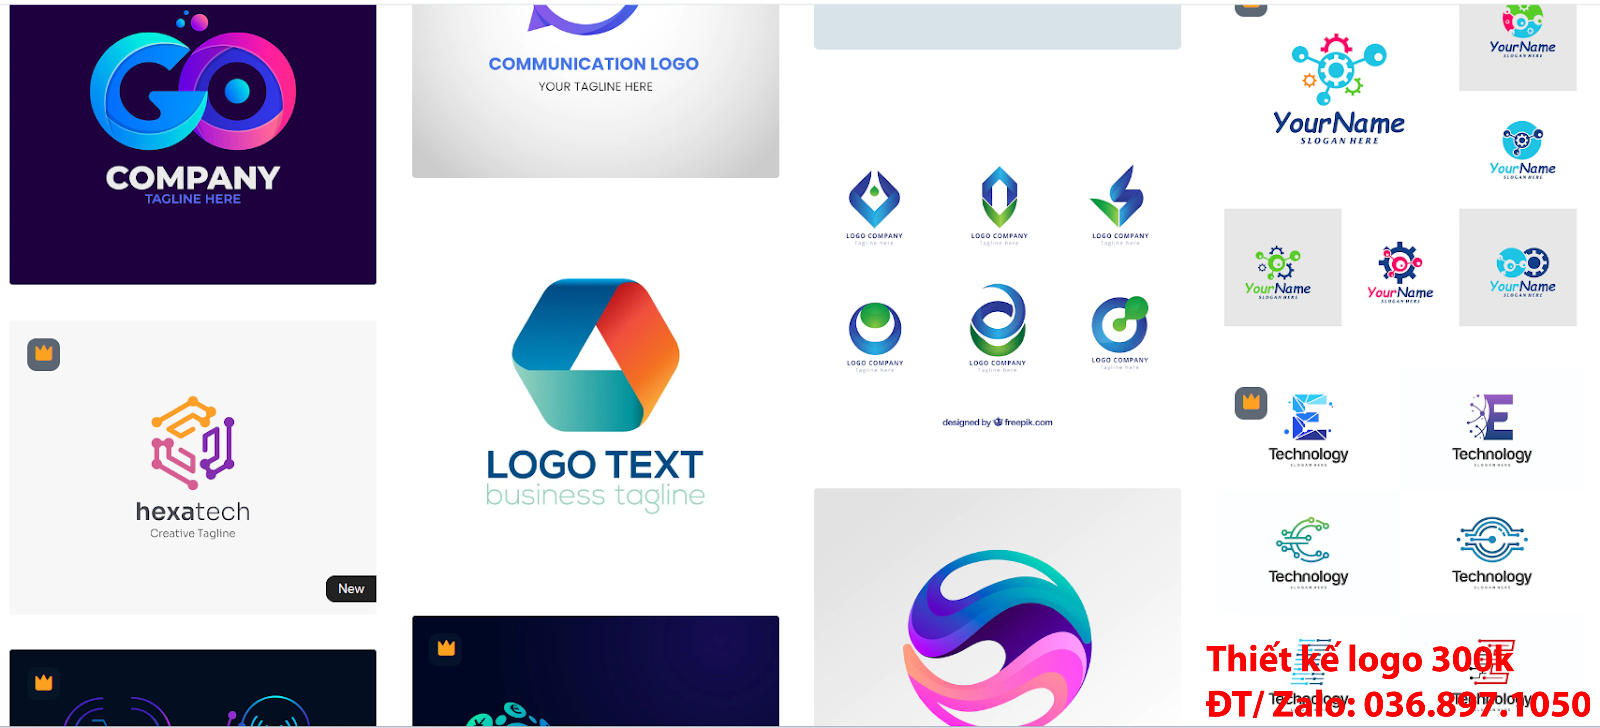 thiết kế Logo công ty công nghệ đẹp nhất hiện nay giá rẻ 500k uy tín chuyên nghiệp